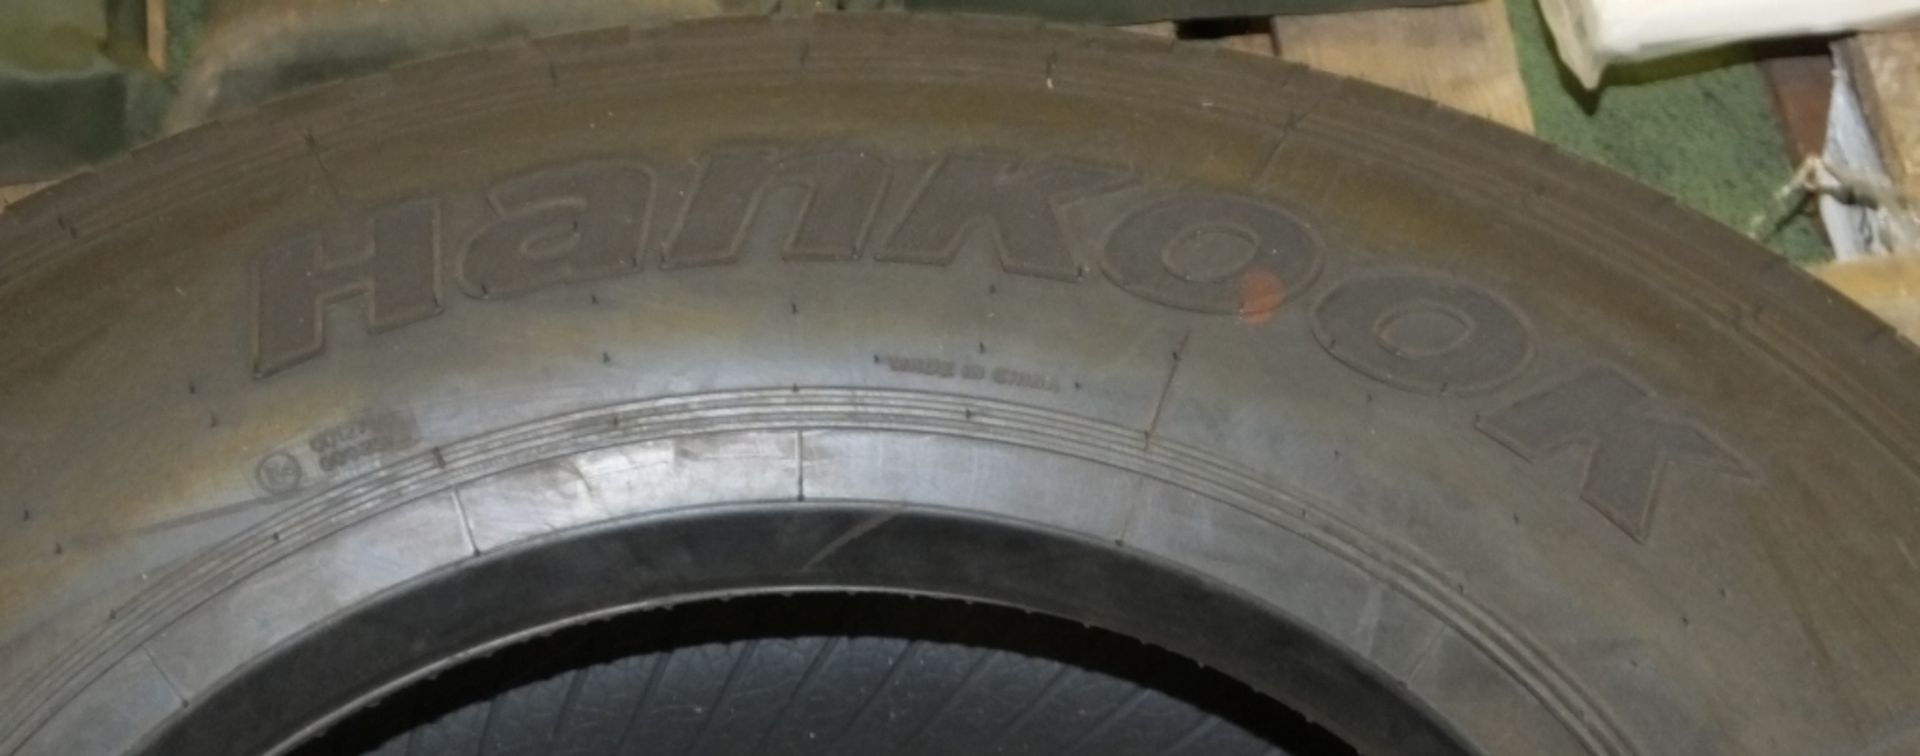 Hankook AH11 305/70R19.5 tyre (new & unused) - Image 2 of 5